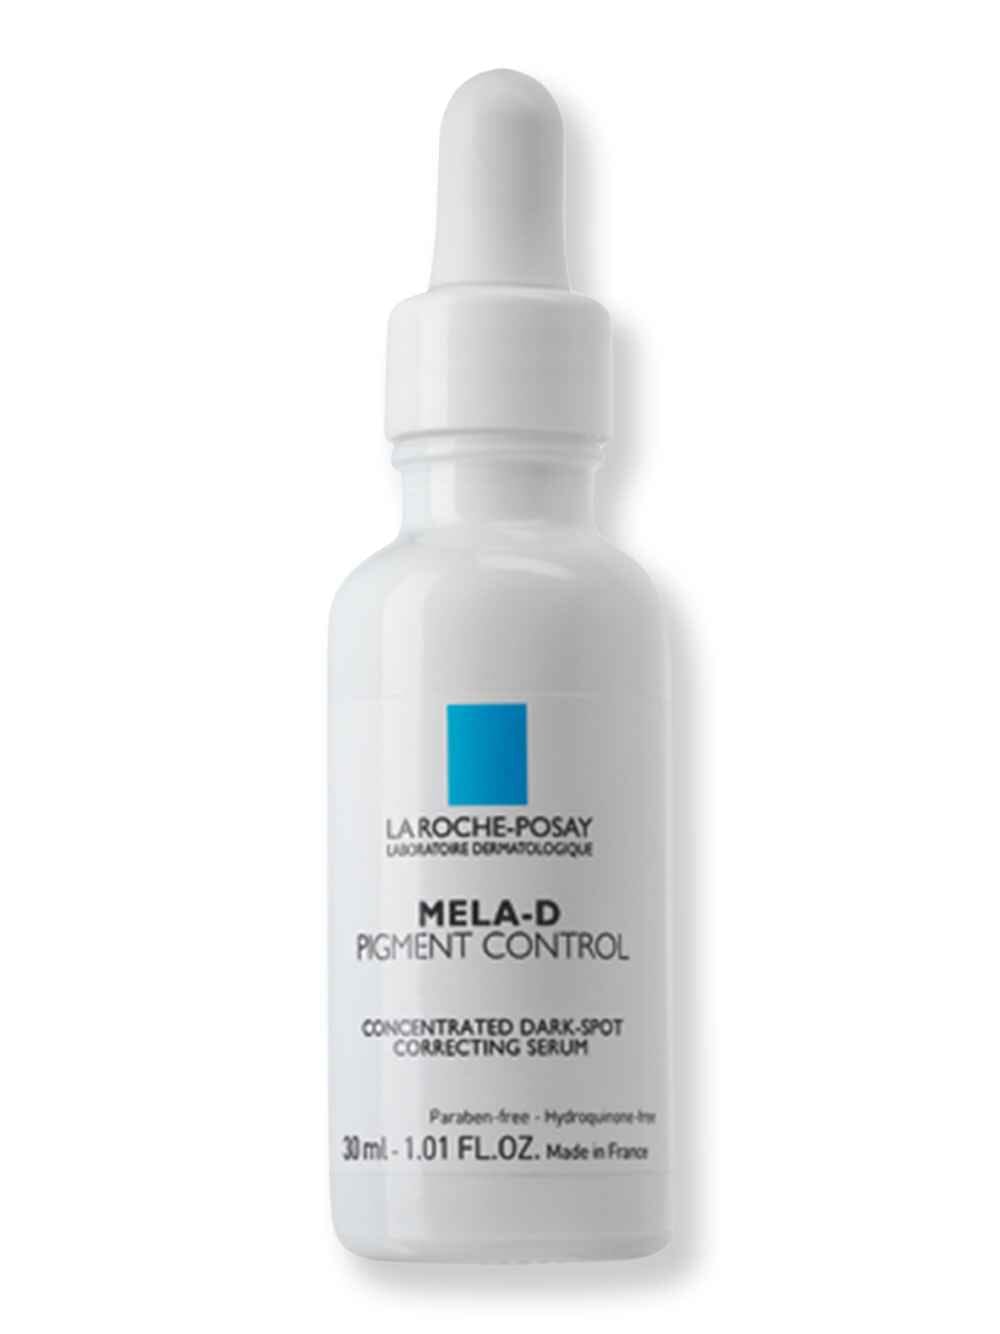 La-Roche Posay La-Roche Posay Mela-D Pigment Control 1 fl oz30 ml Skin Care Treatments 